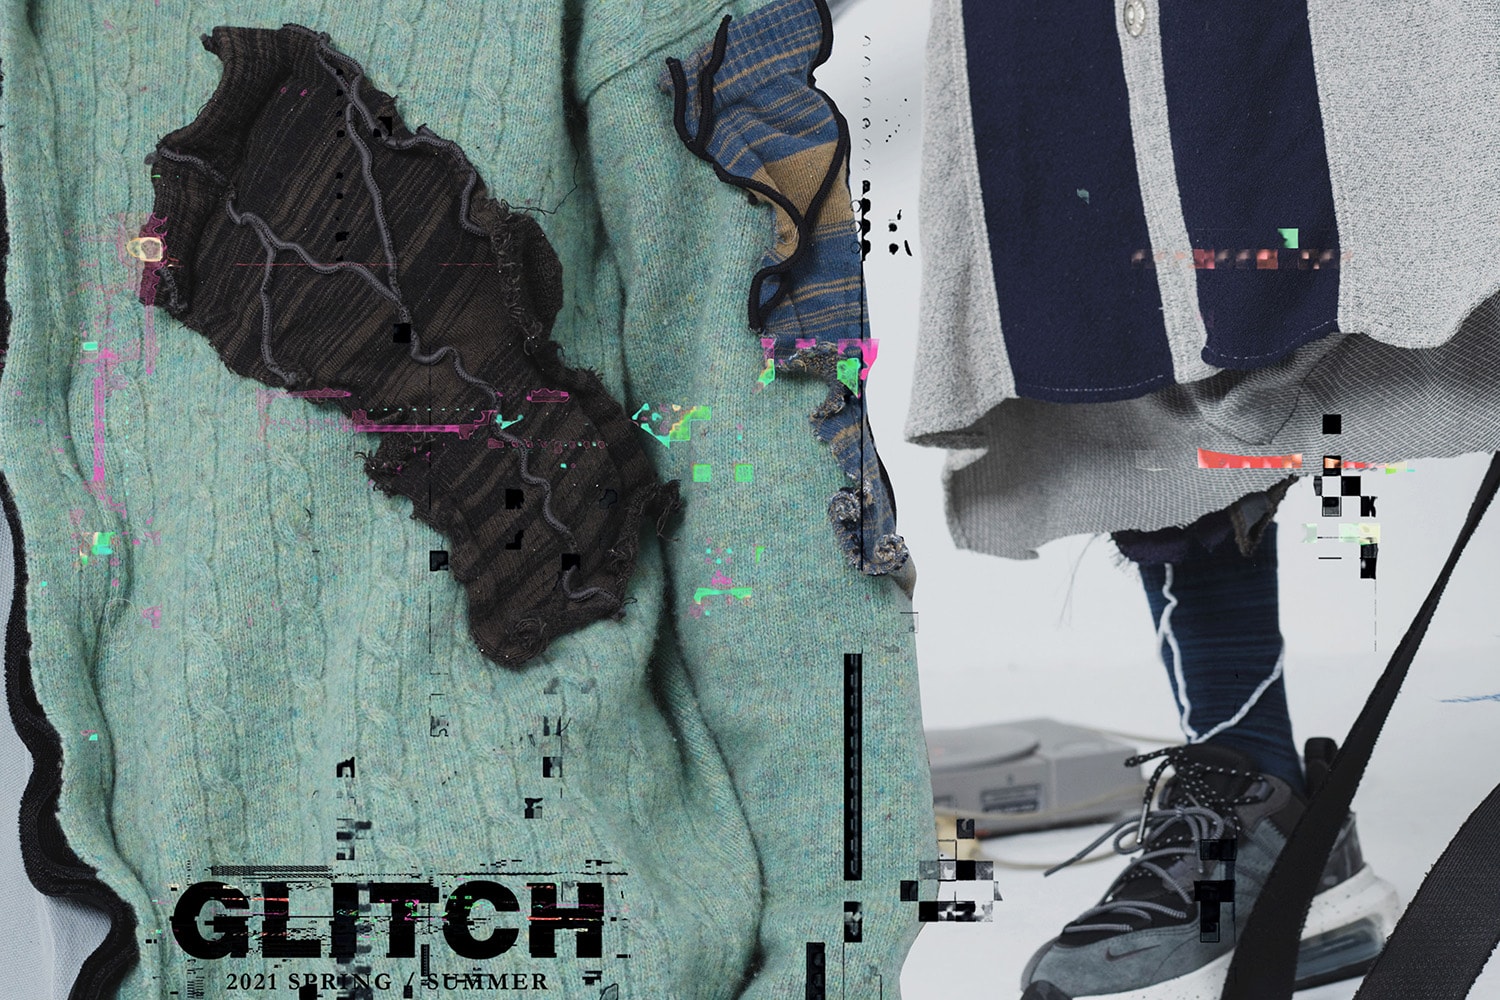 nozzle quiz 最新春夏系列「GLITCH」Overlock Stitch 襪履系列正式登場